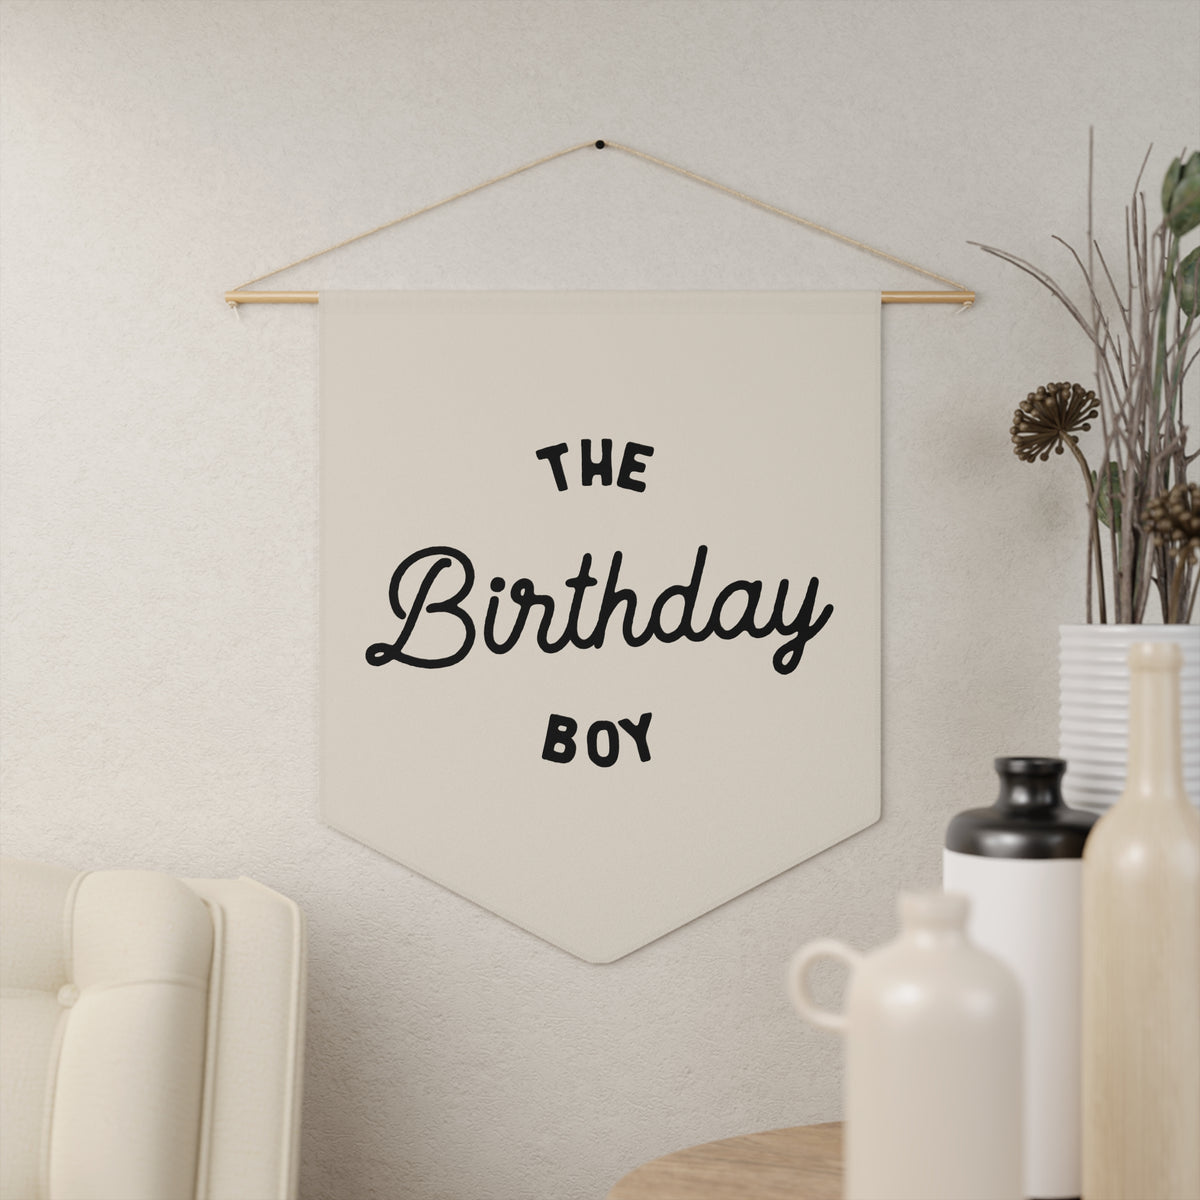 The Birthday Boy Wall Pennant